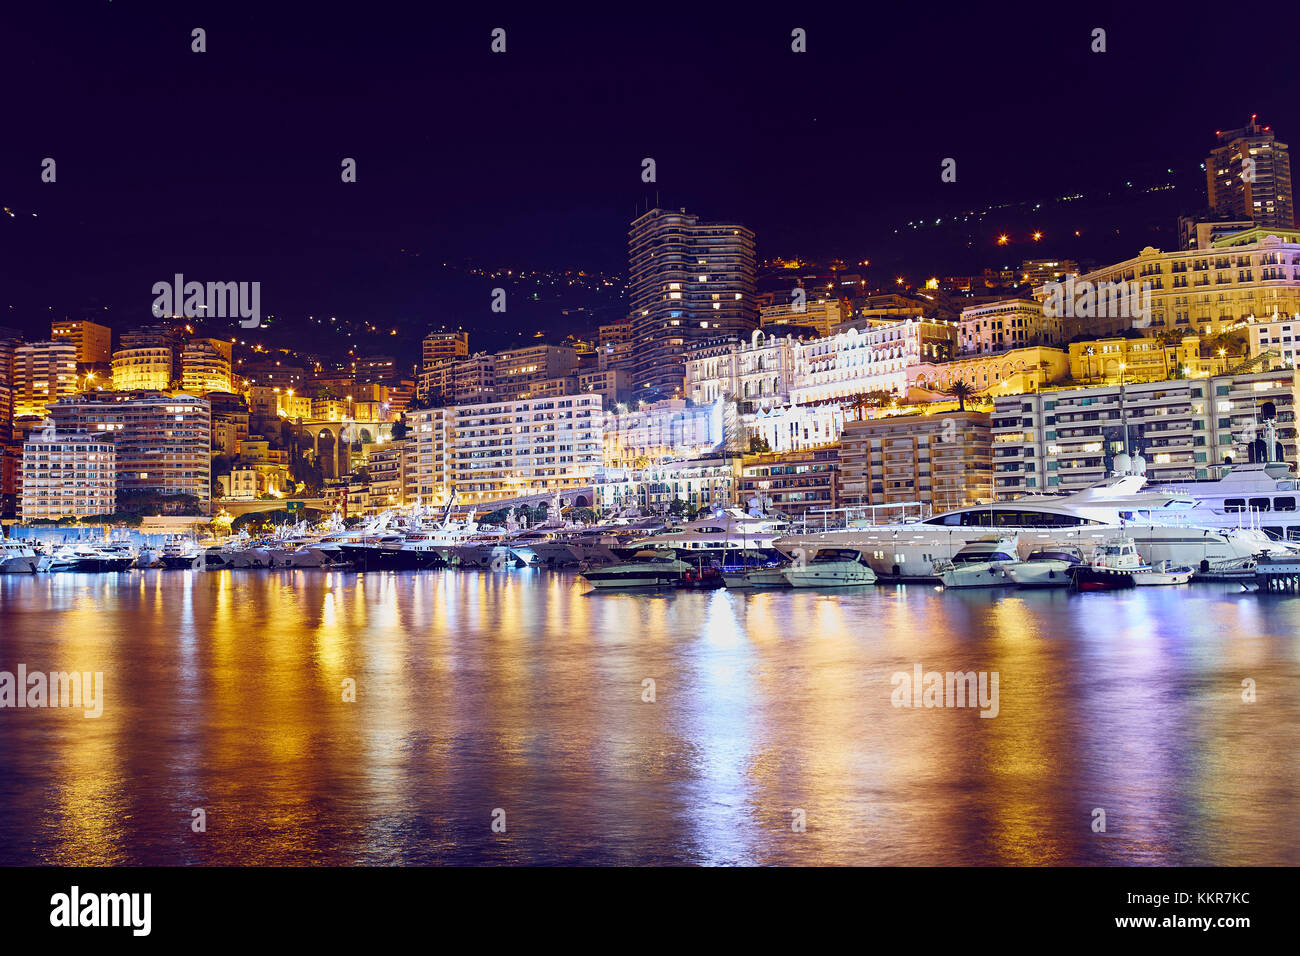 Vista notturna di montecarlo, Monaco, Principato di Monaco, cote d'azur, sud della Francia, Europa occidentale, Europa Foto Stock